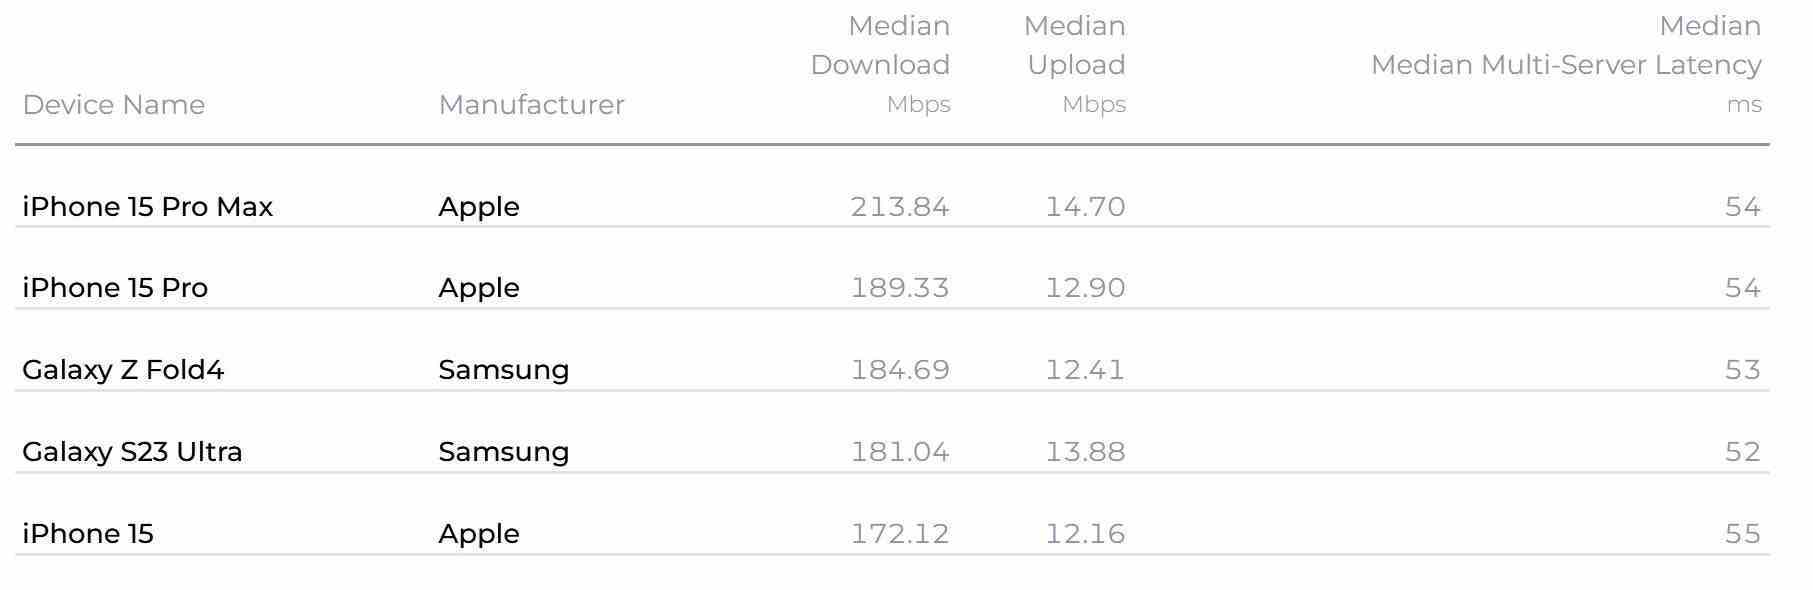 Apple iPhone 15 Pro Max, 4. çeyrekte ABD'deki en hızlı telefon oldu - Ookla'nın Speedtest raporu, 4. çeyrekte ABD'deki en hızlı telefonu ortaya koyuyor